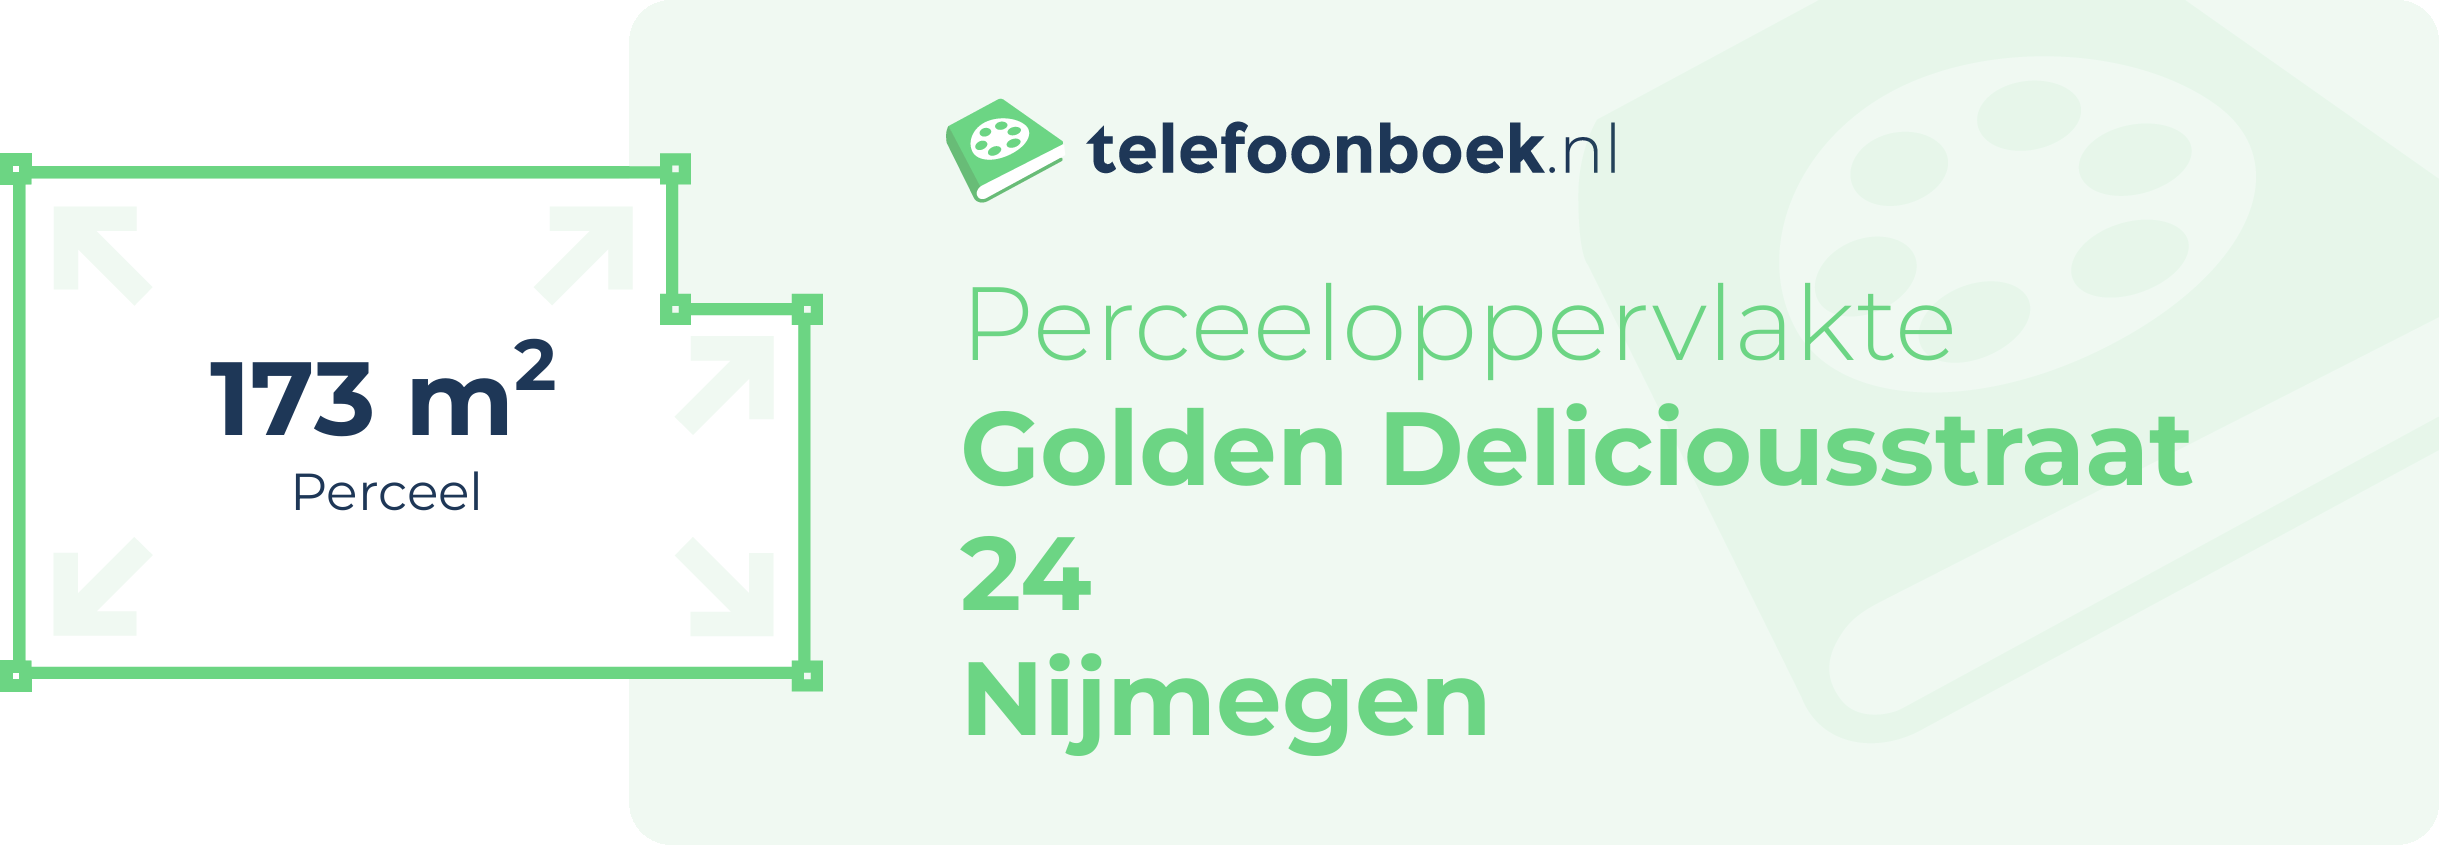 Perceeloppervlakte Golden Deliciousstraat 24 Nijmegen